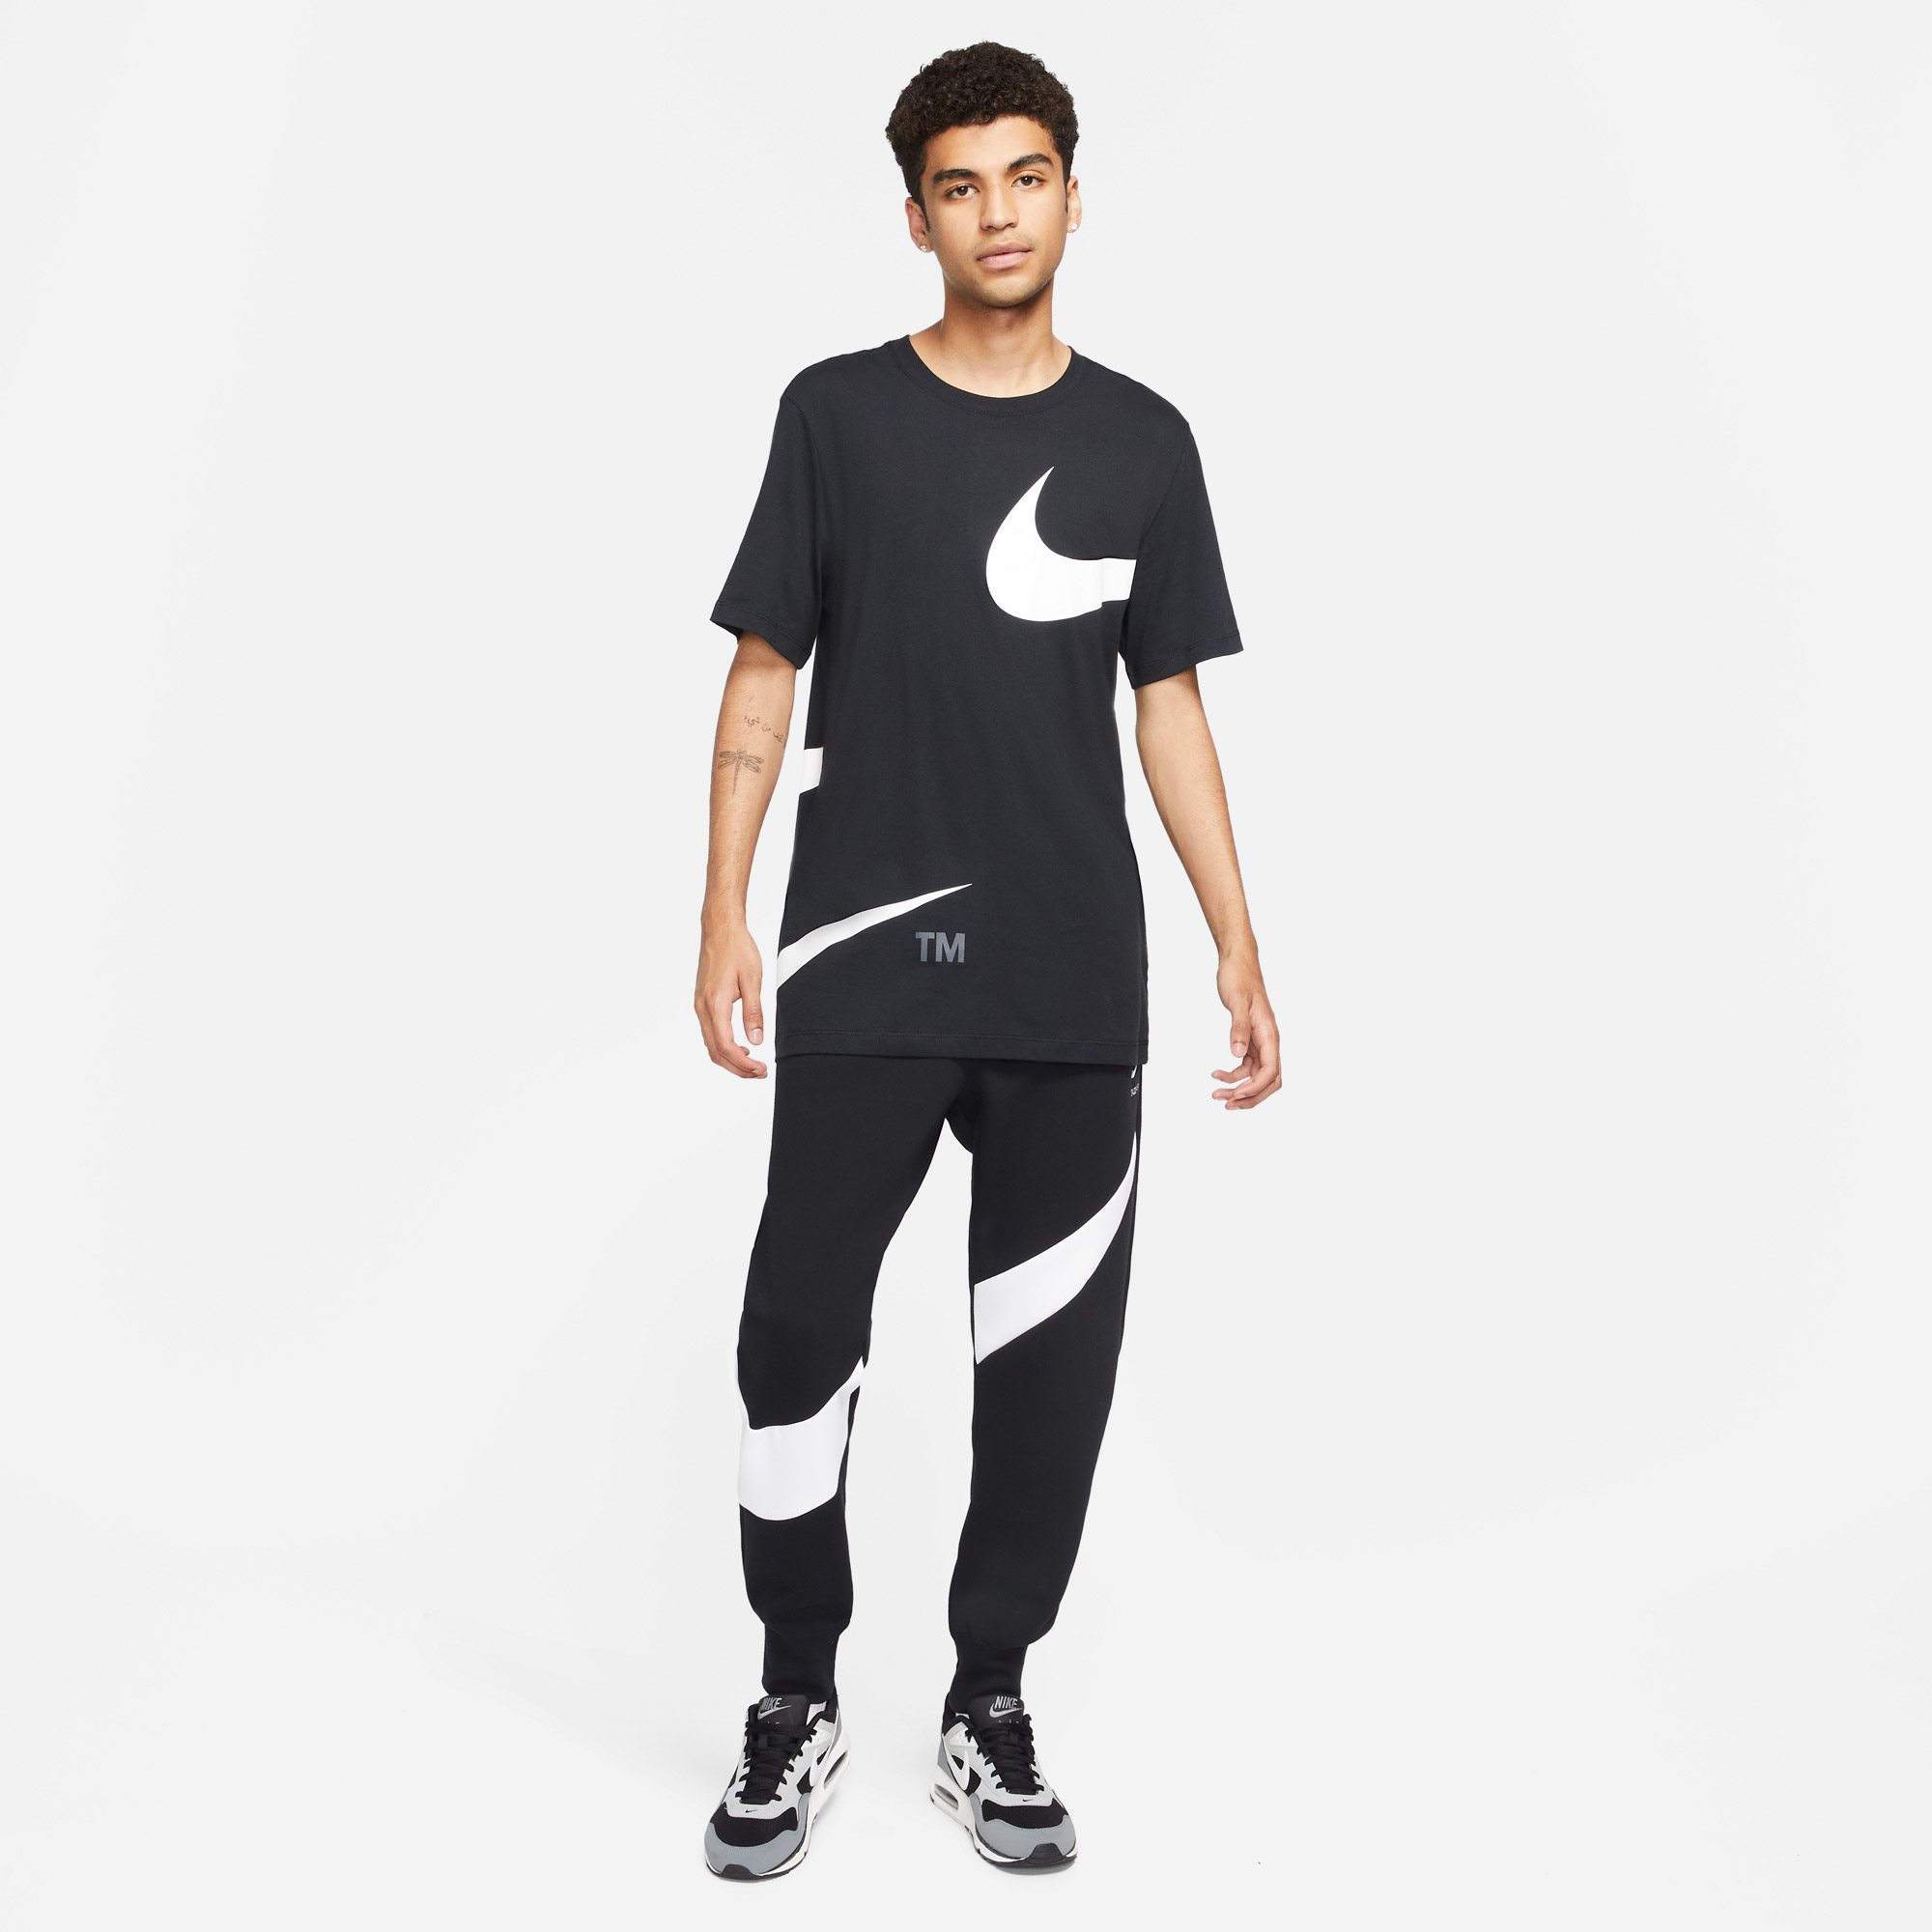 Nike Sportswear Swoosh Tech Fleece Erkek Siyah Eşofman Altı